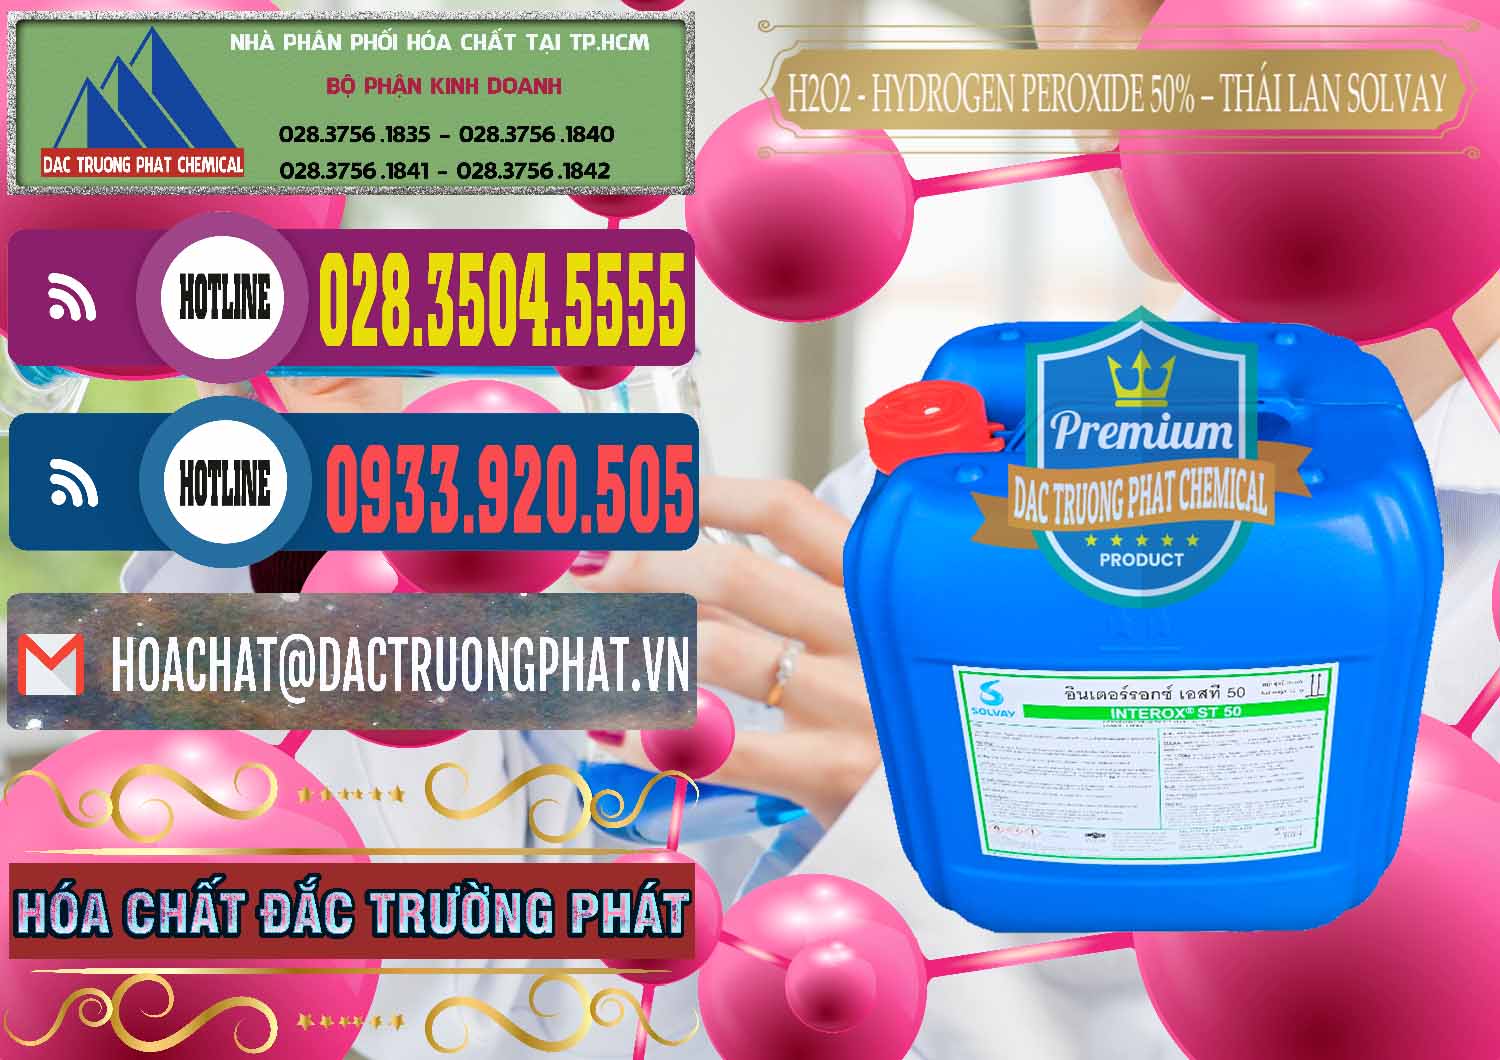 Công ty chuyên phân phối & bán H2O2 - Hydrogen Peroxide 50% Thái Lan Solvay - 0068 - Công ty chuyên phân phối _ nhập khẩu hóa chất tại TP.HCM - muabanhoachat.com.vn